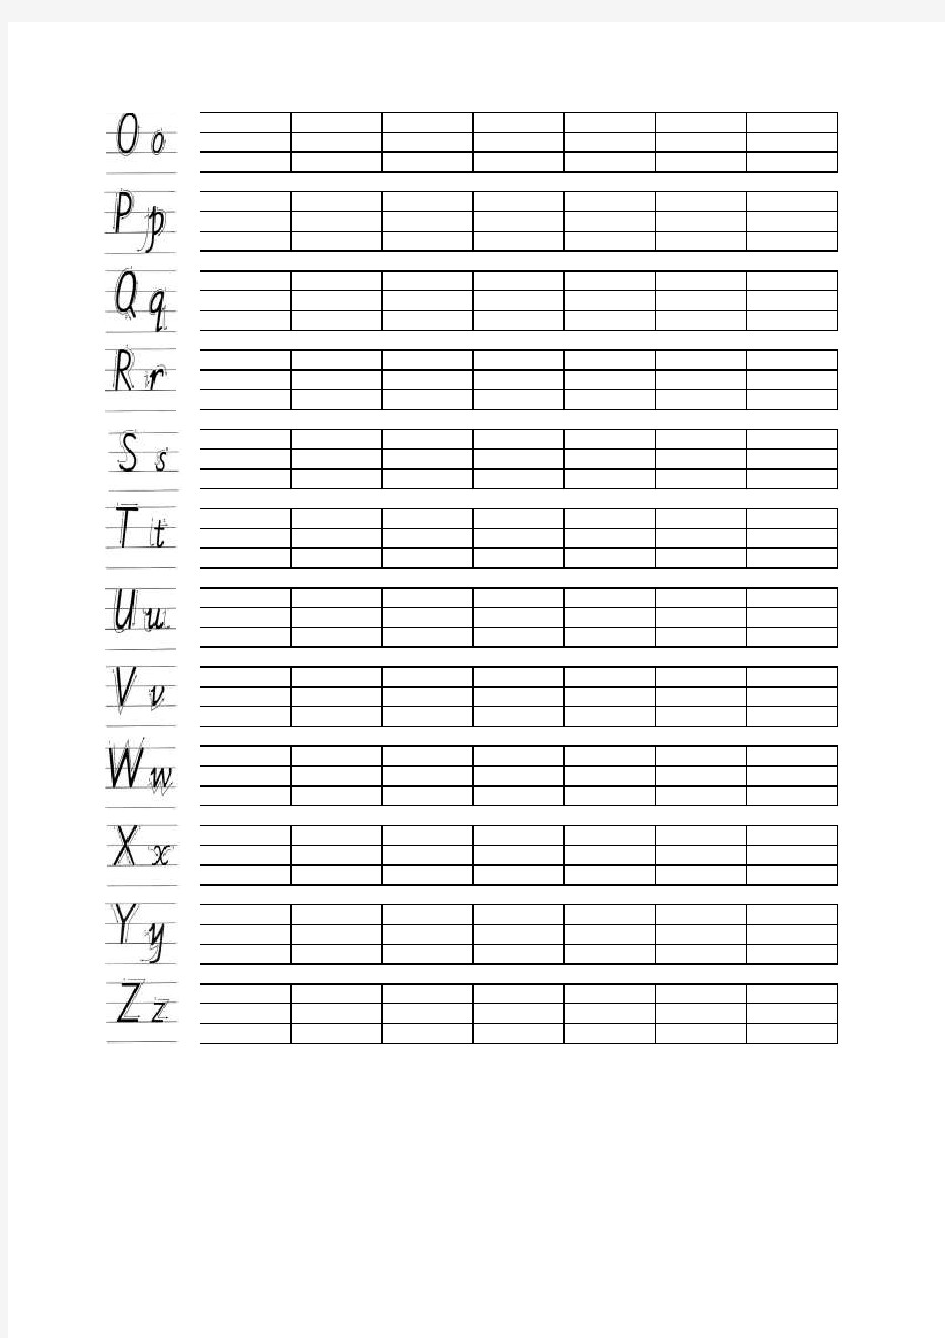 英语26字母书写完美练习纸